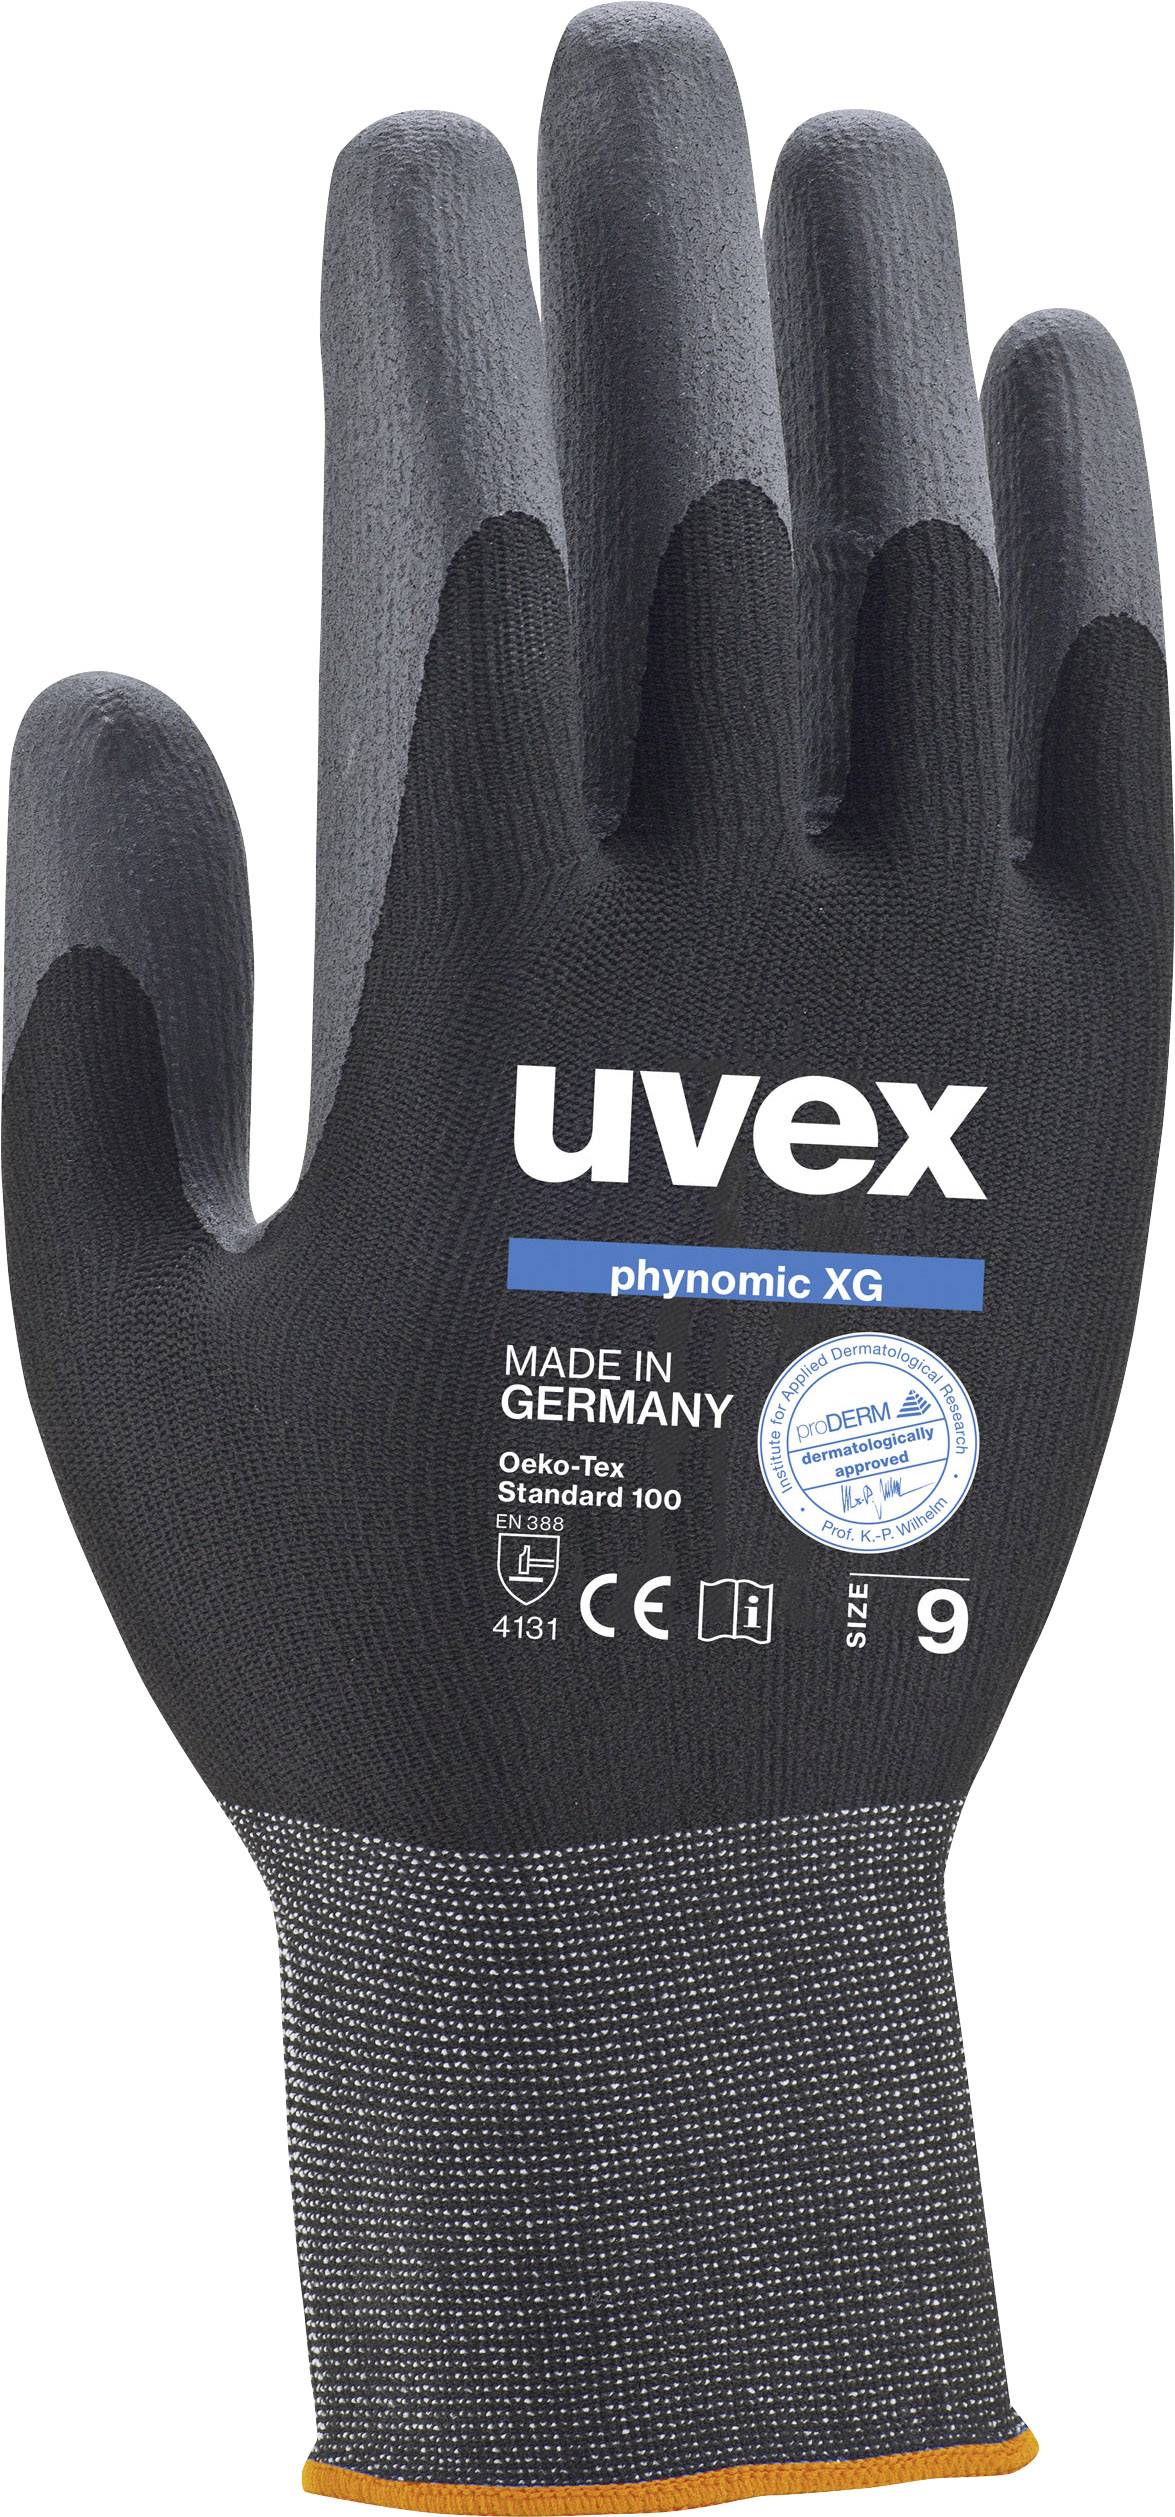 UVEX 6007010 Schutzhandschuh phynomic XG Größe (Handschuhe): 10 (6007010)